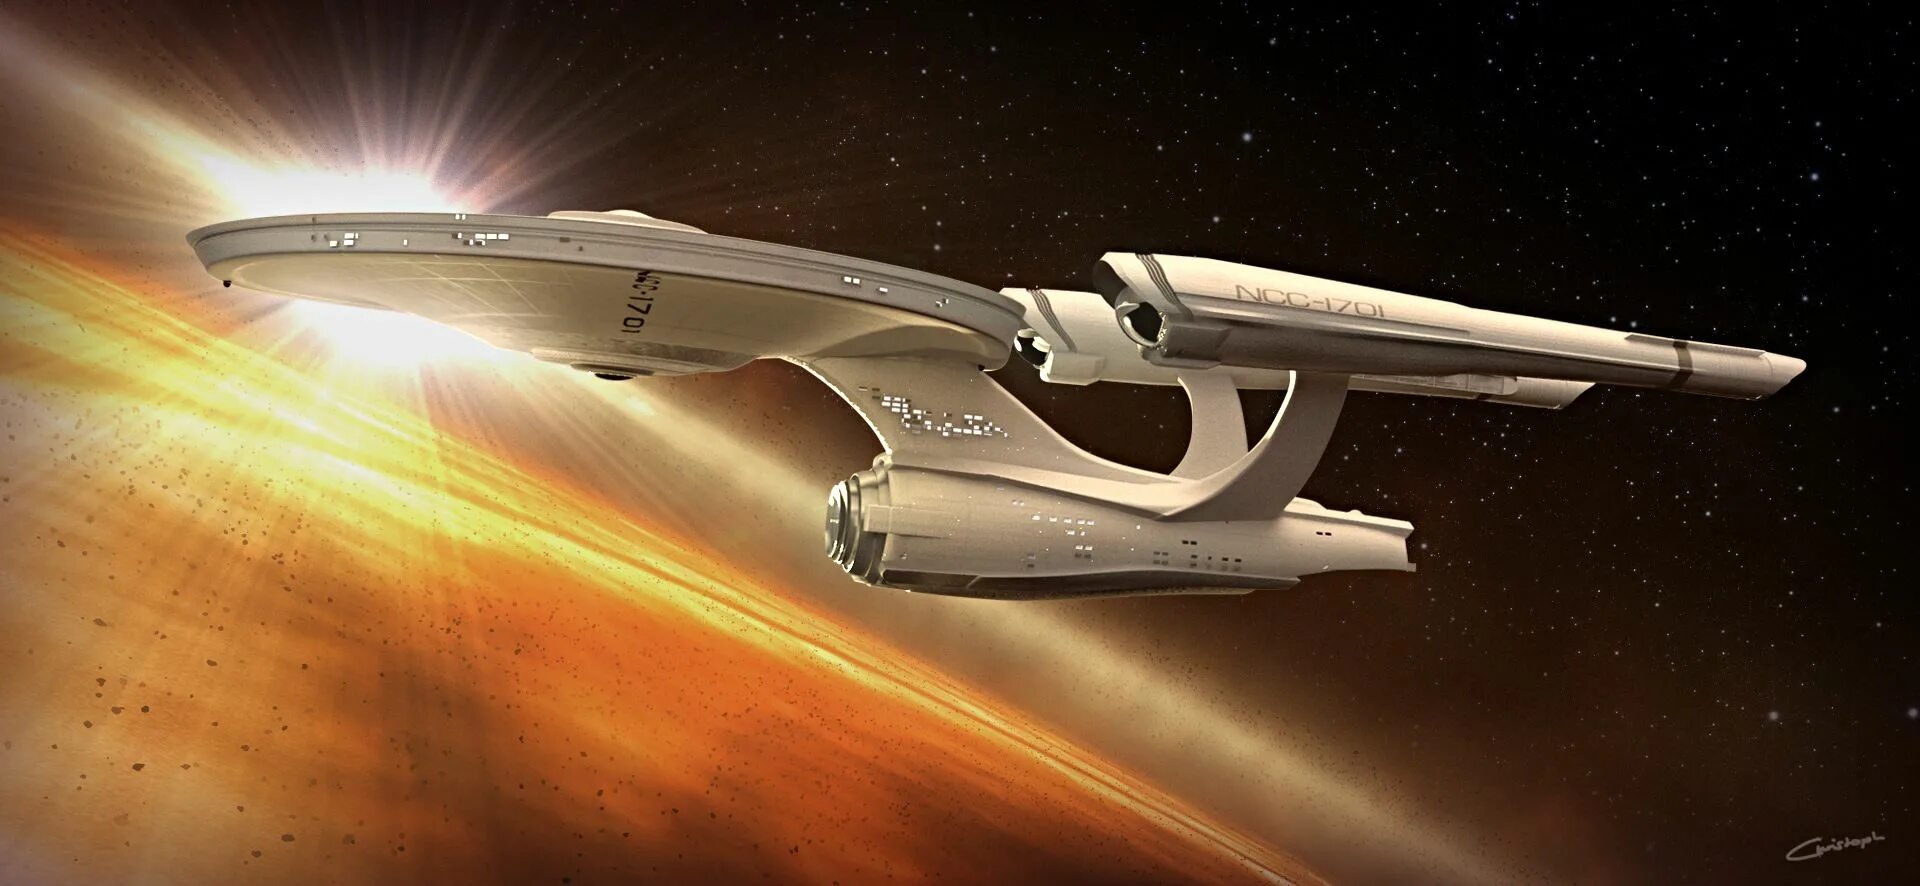 Enterprise egamers. Стартрек корабль Энтерпрайз. Star Trek NCC 1701.